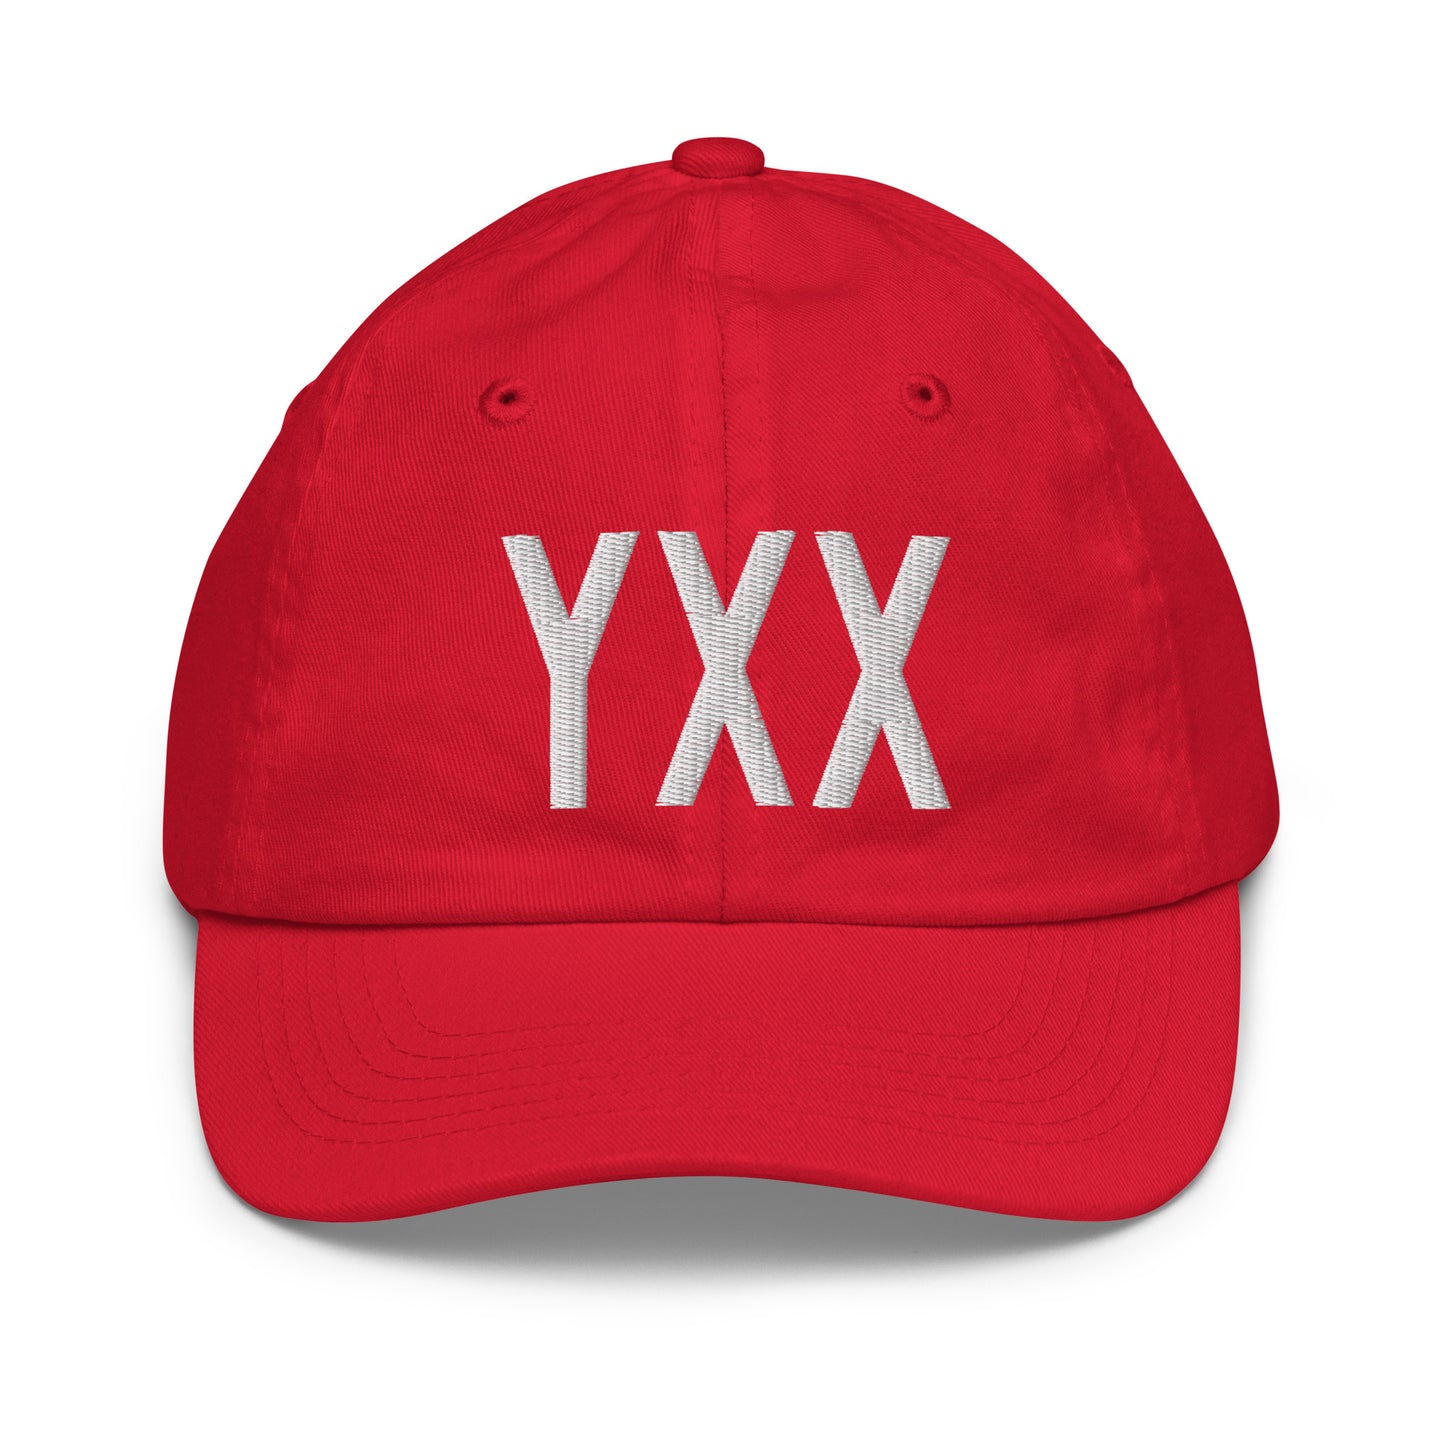 Airport Code Kid's Baseball Cap - White • YXX Abbotsford • YHM Designs - Image 17